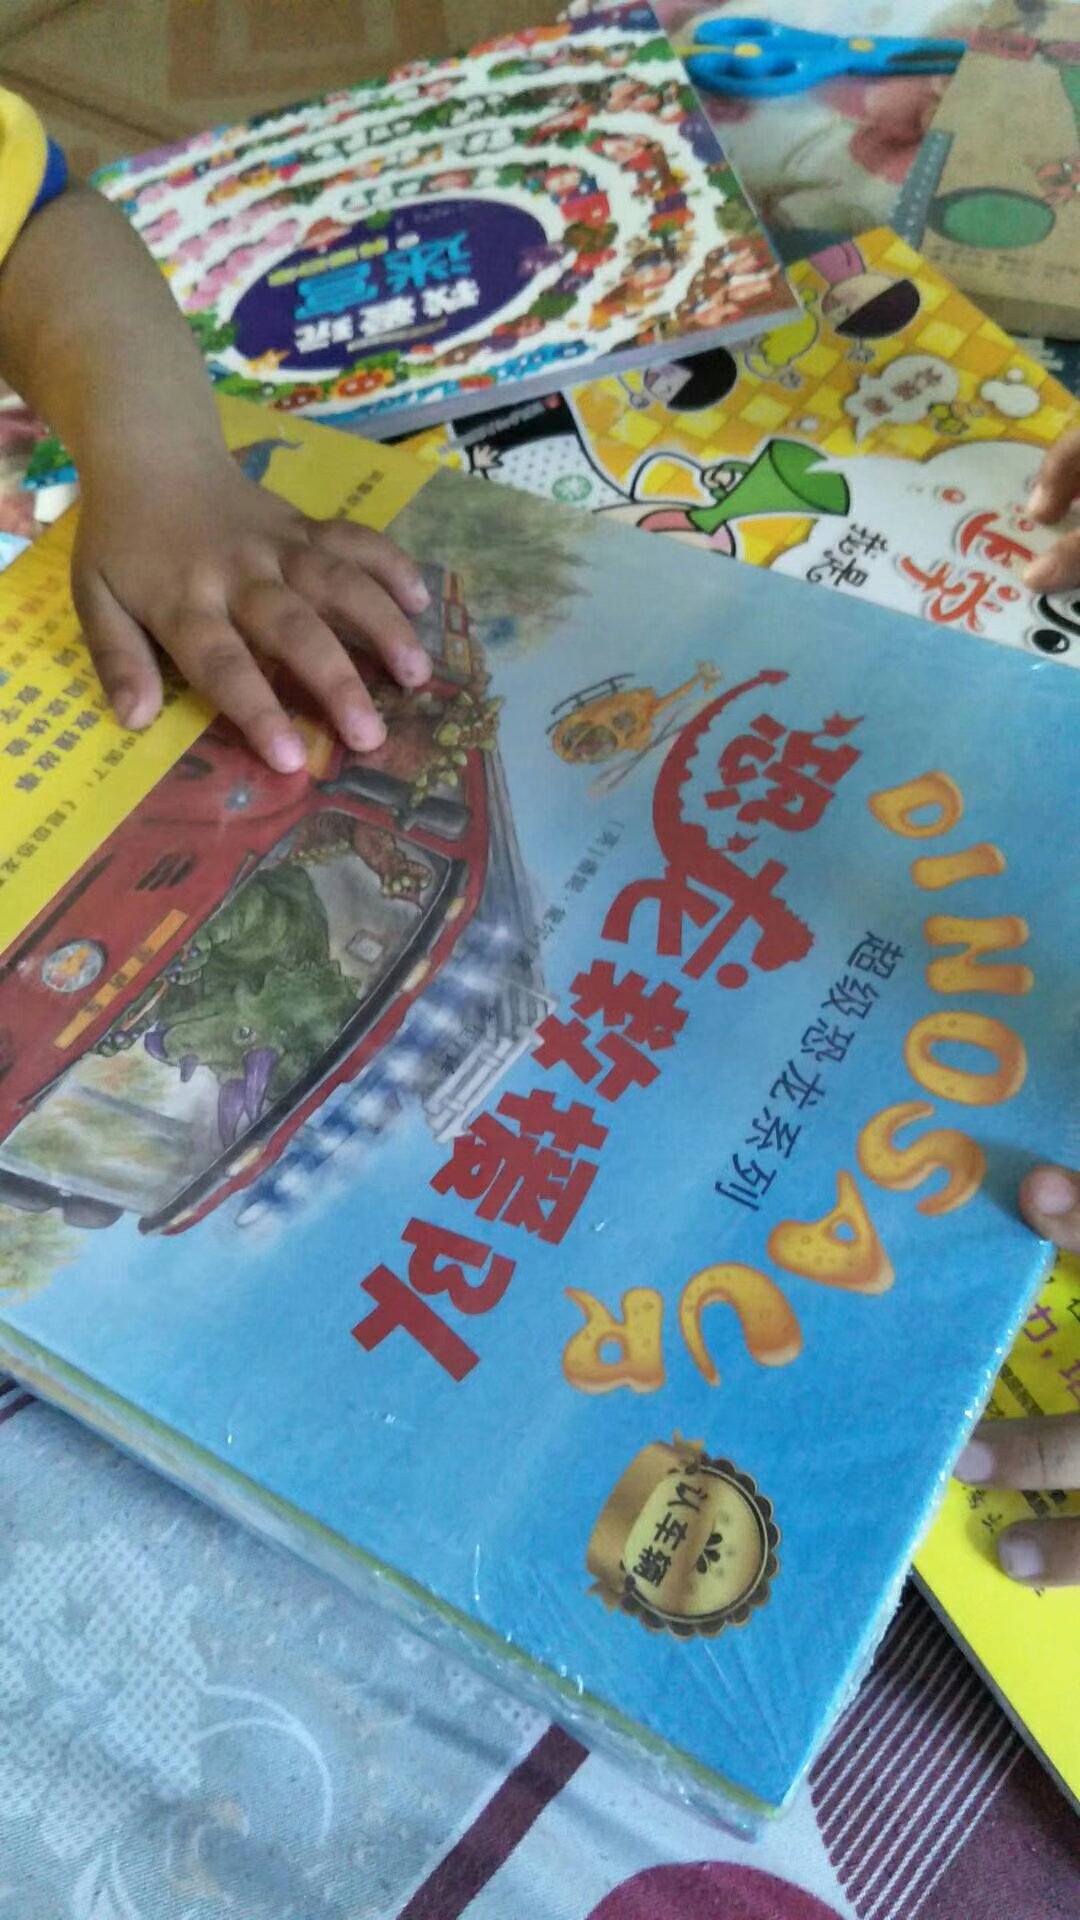 书，印刷精美，彩色配图，字迹清晰，孩子喜欢看。开卷有益！